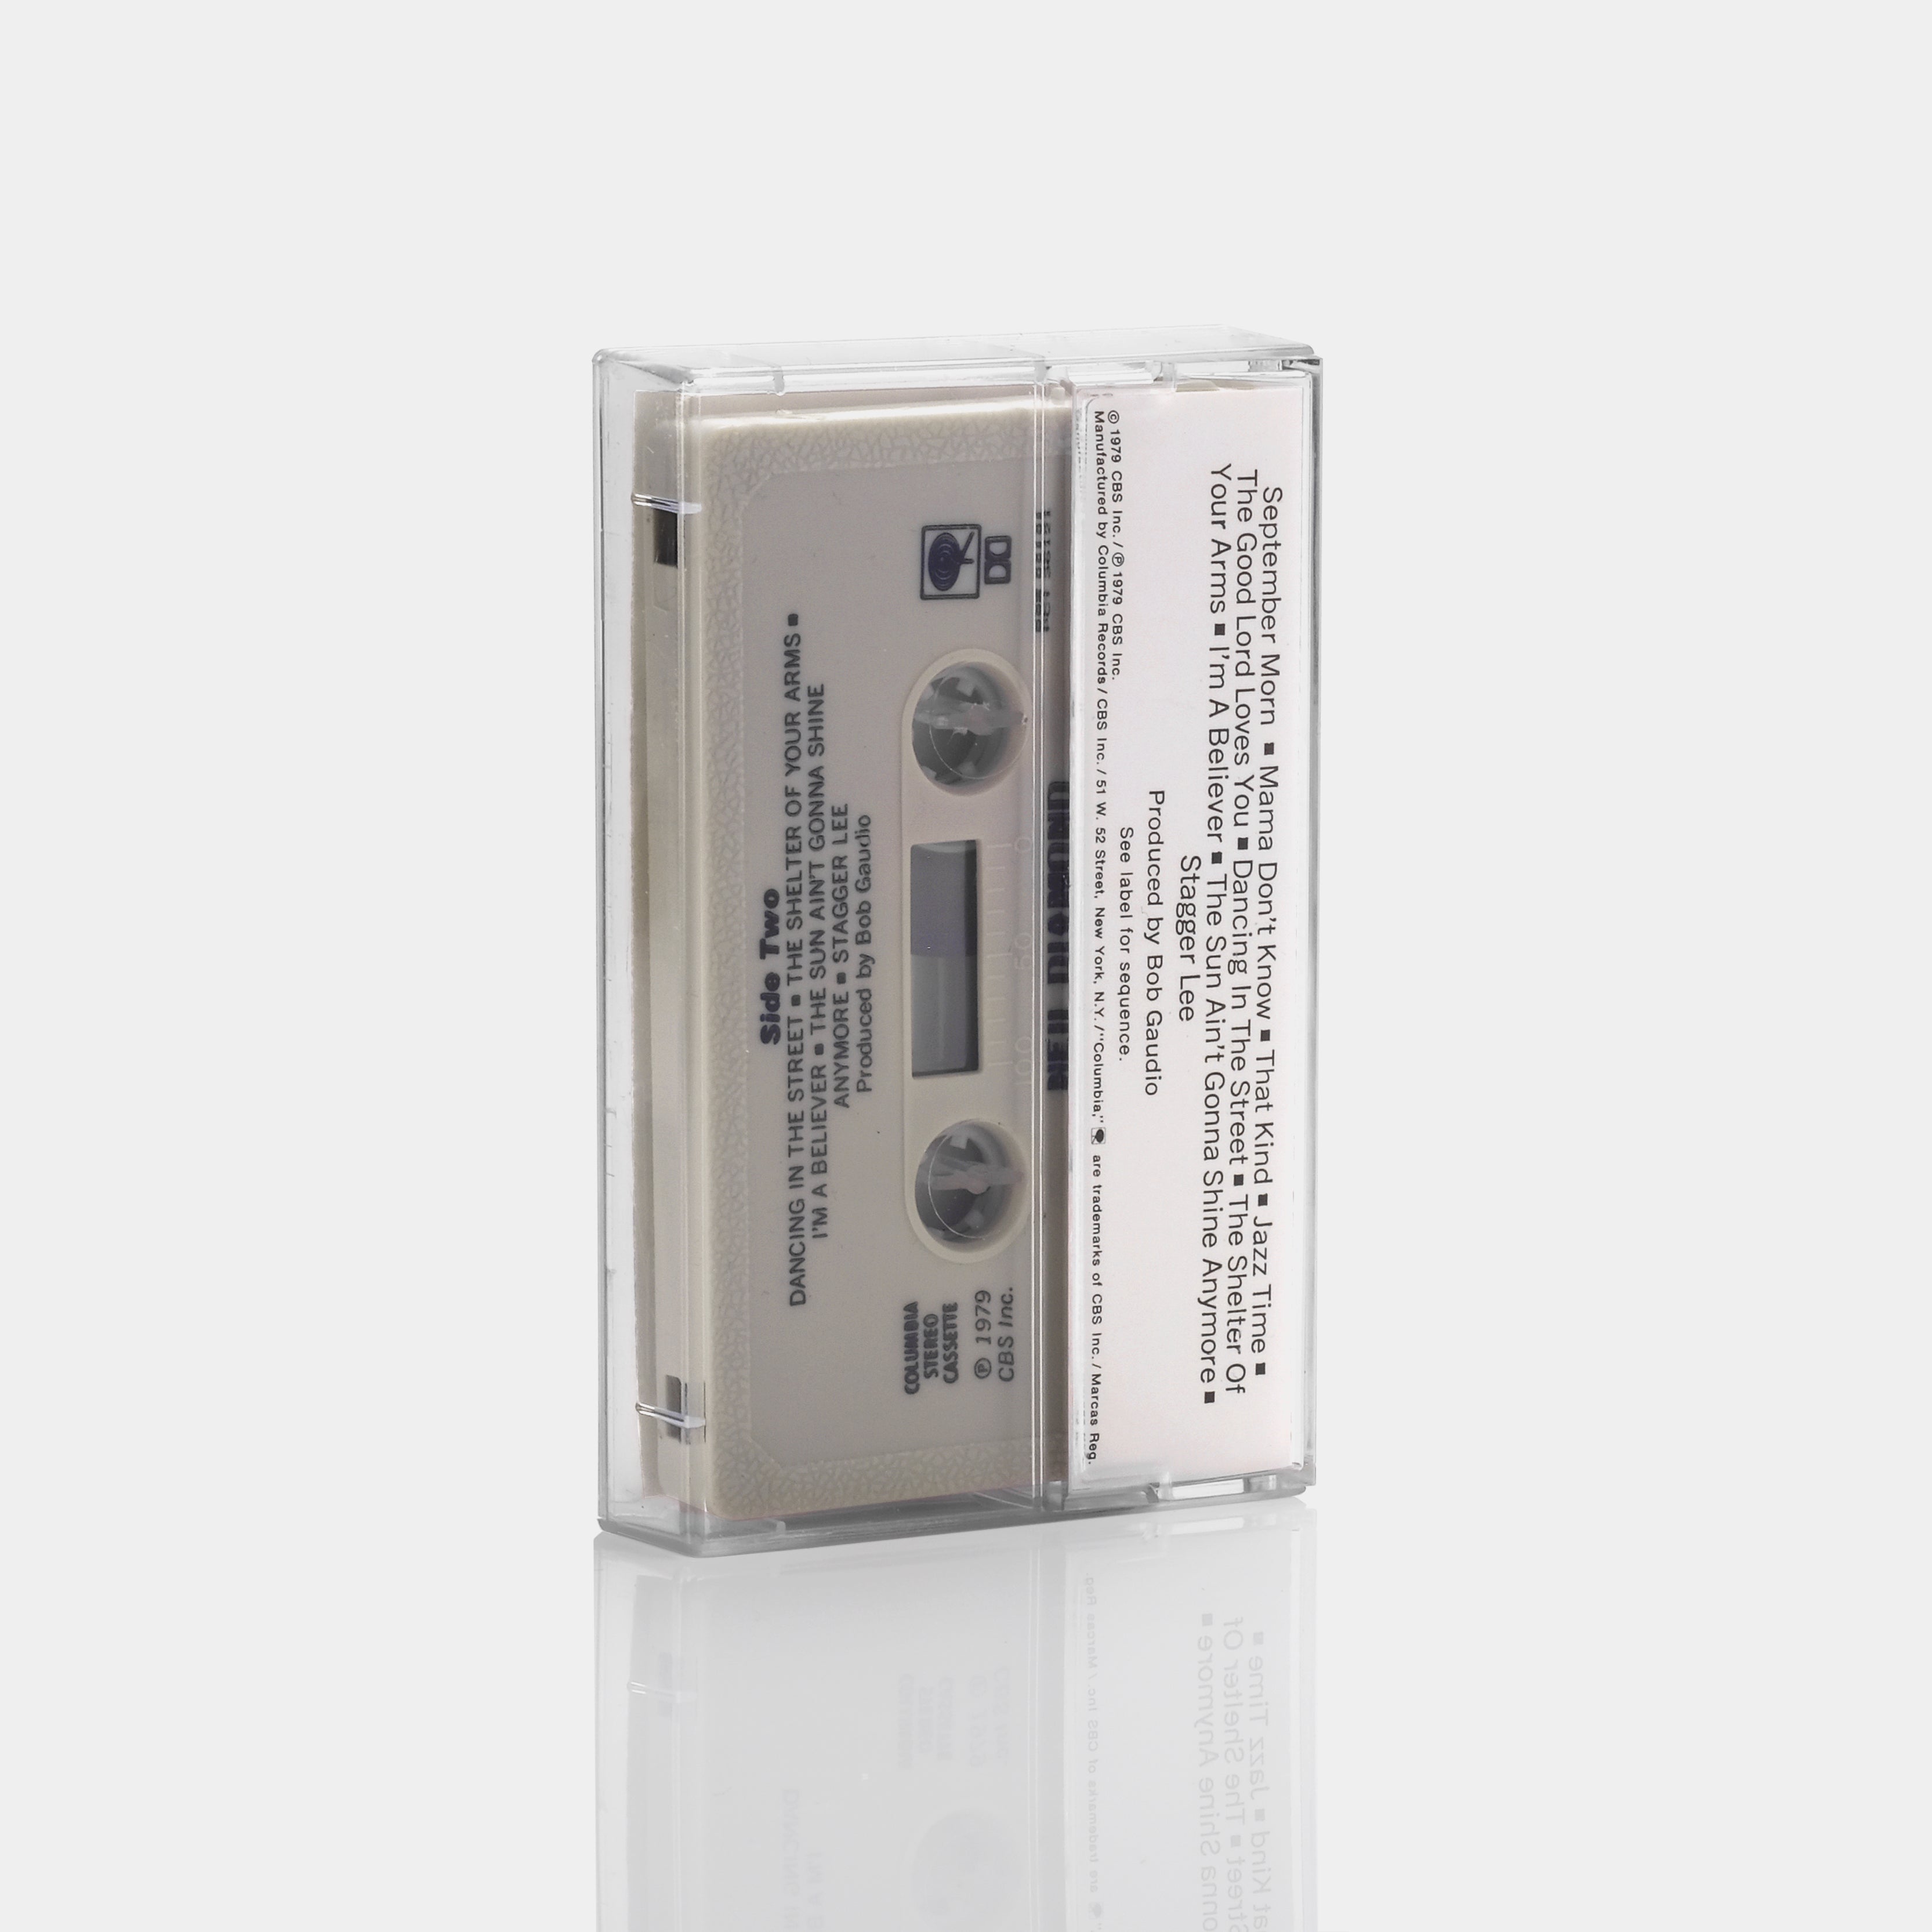 Neil Diamond - September Morn Cassette Tape